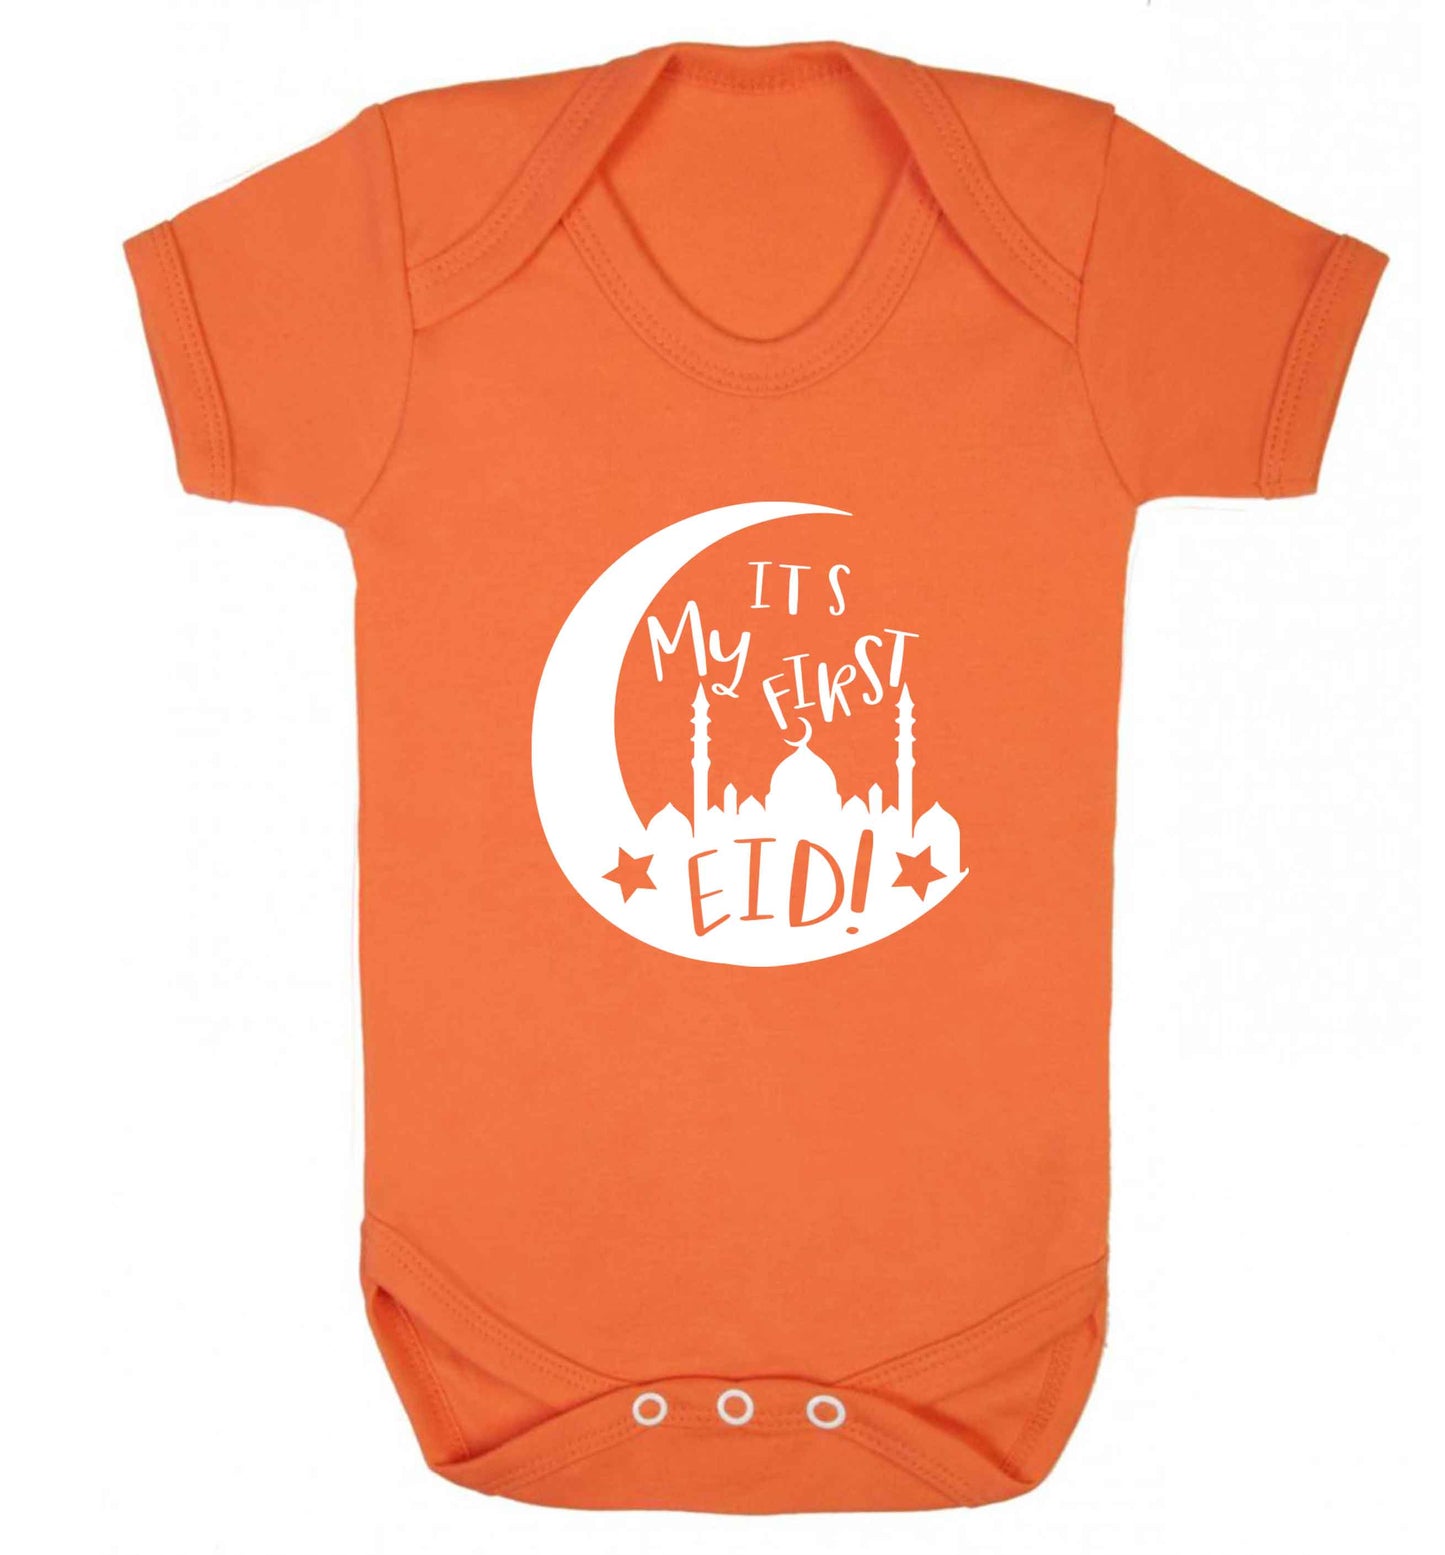 It's my first Eid moon baby vest orange 18-24 months